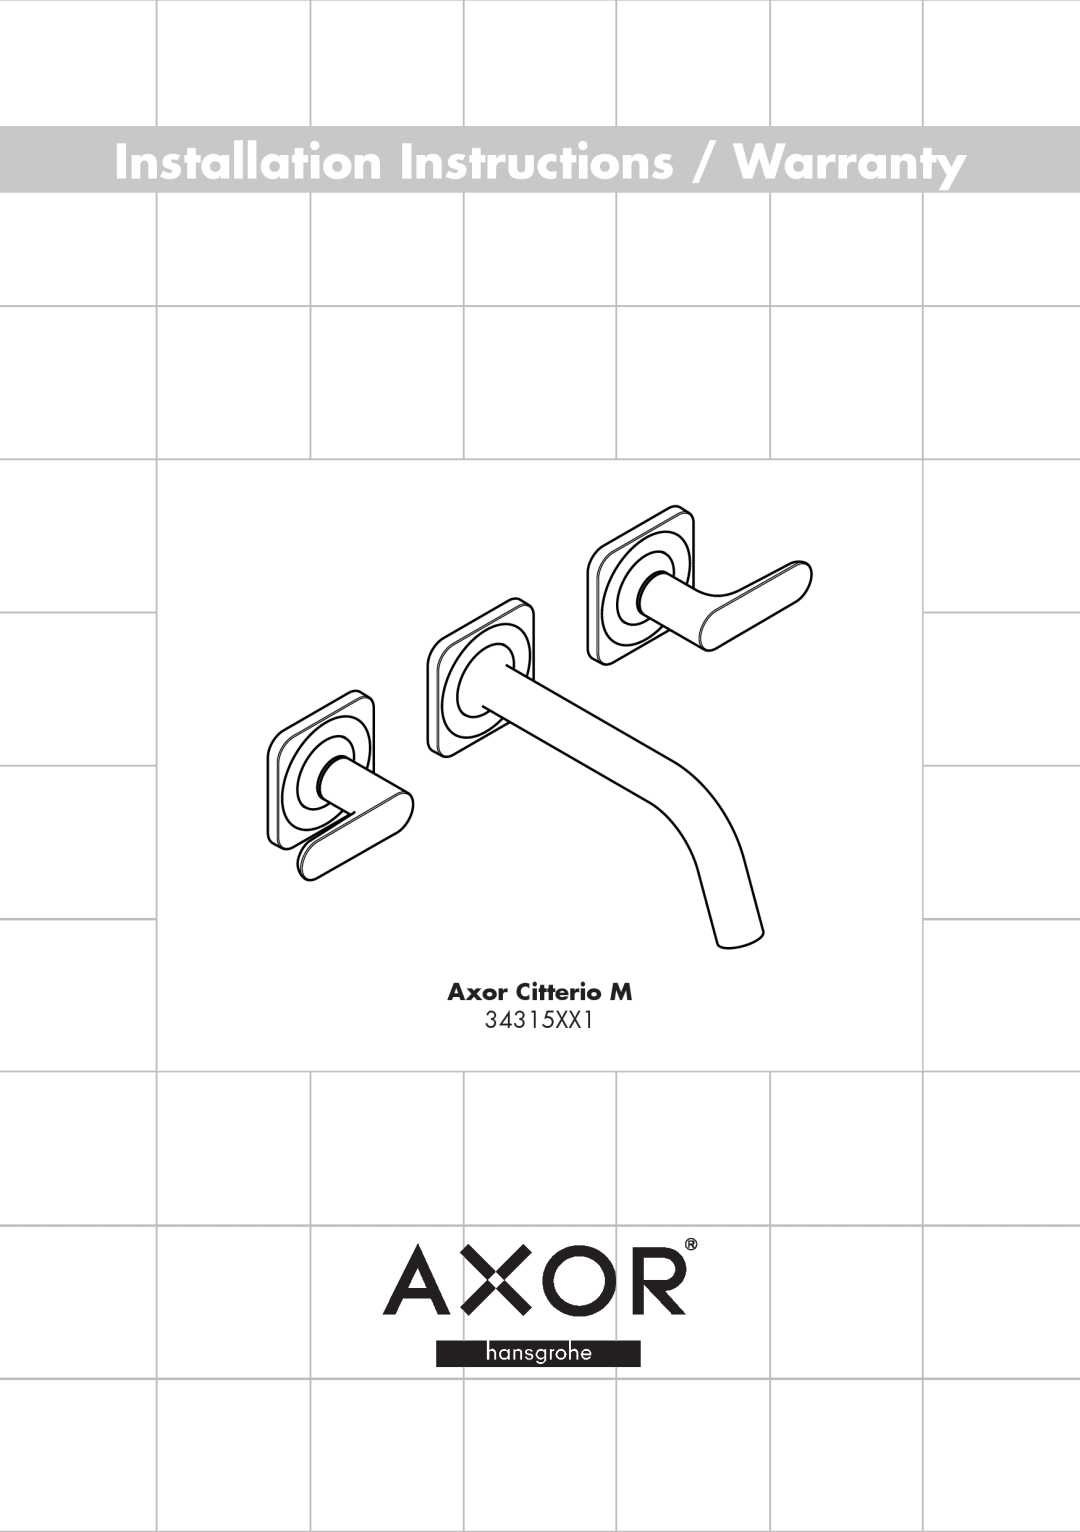 Axor 34315XX1 installation instructions Installation Instructions / Warranty, Axor Citterio M 